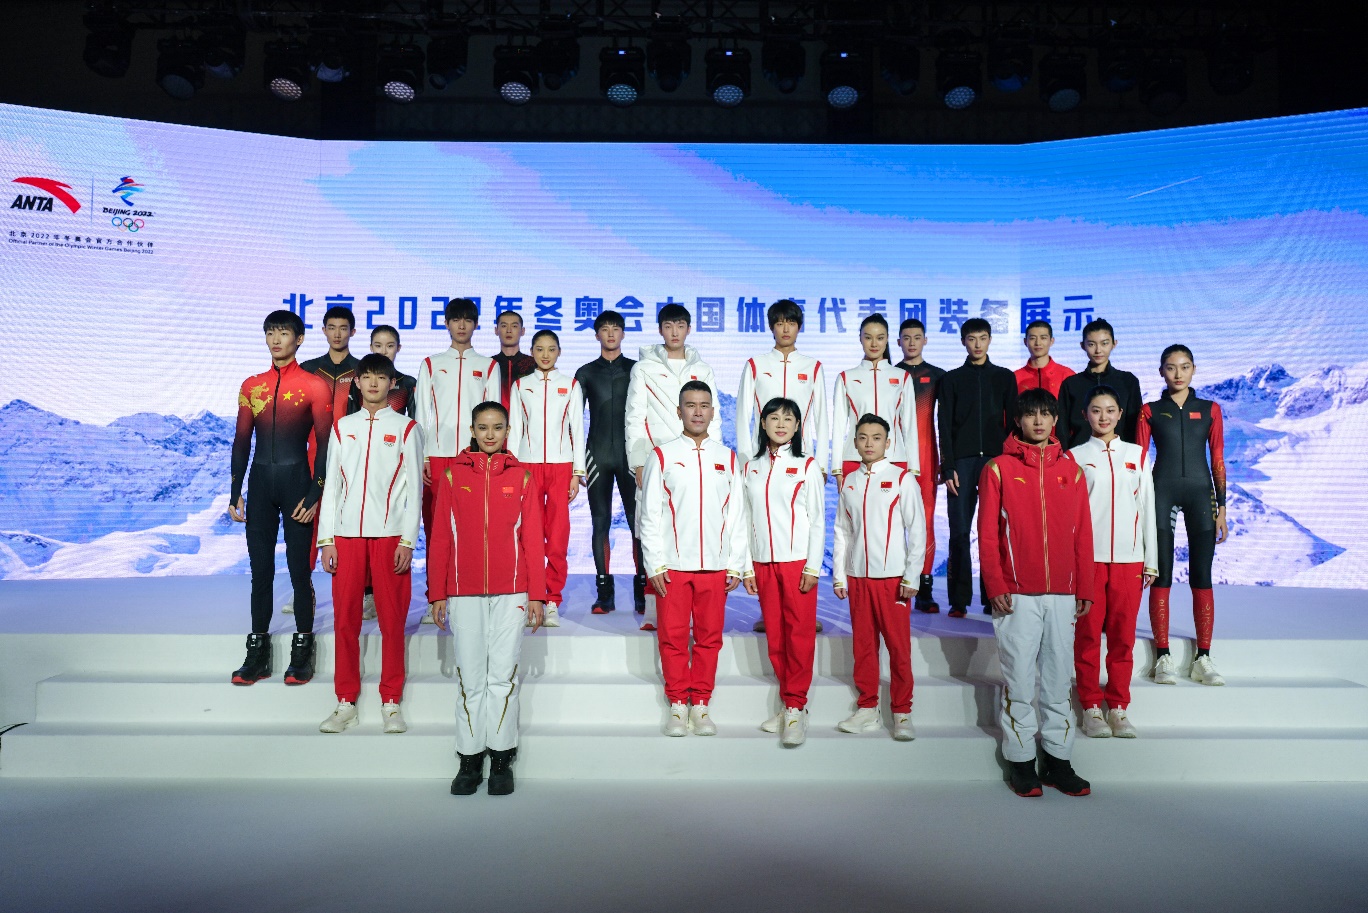 北京冬奧會裝備亮相15大賽項12支中國隊穿安踏